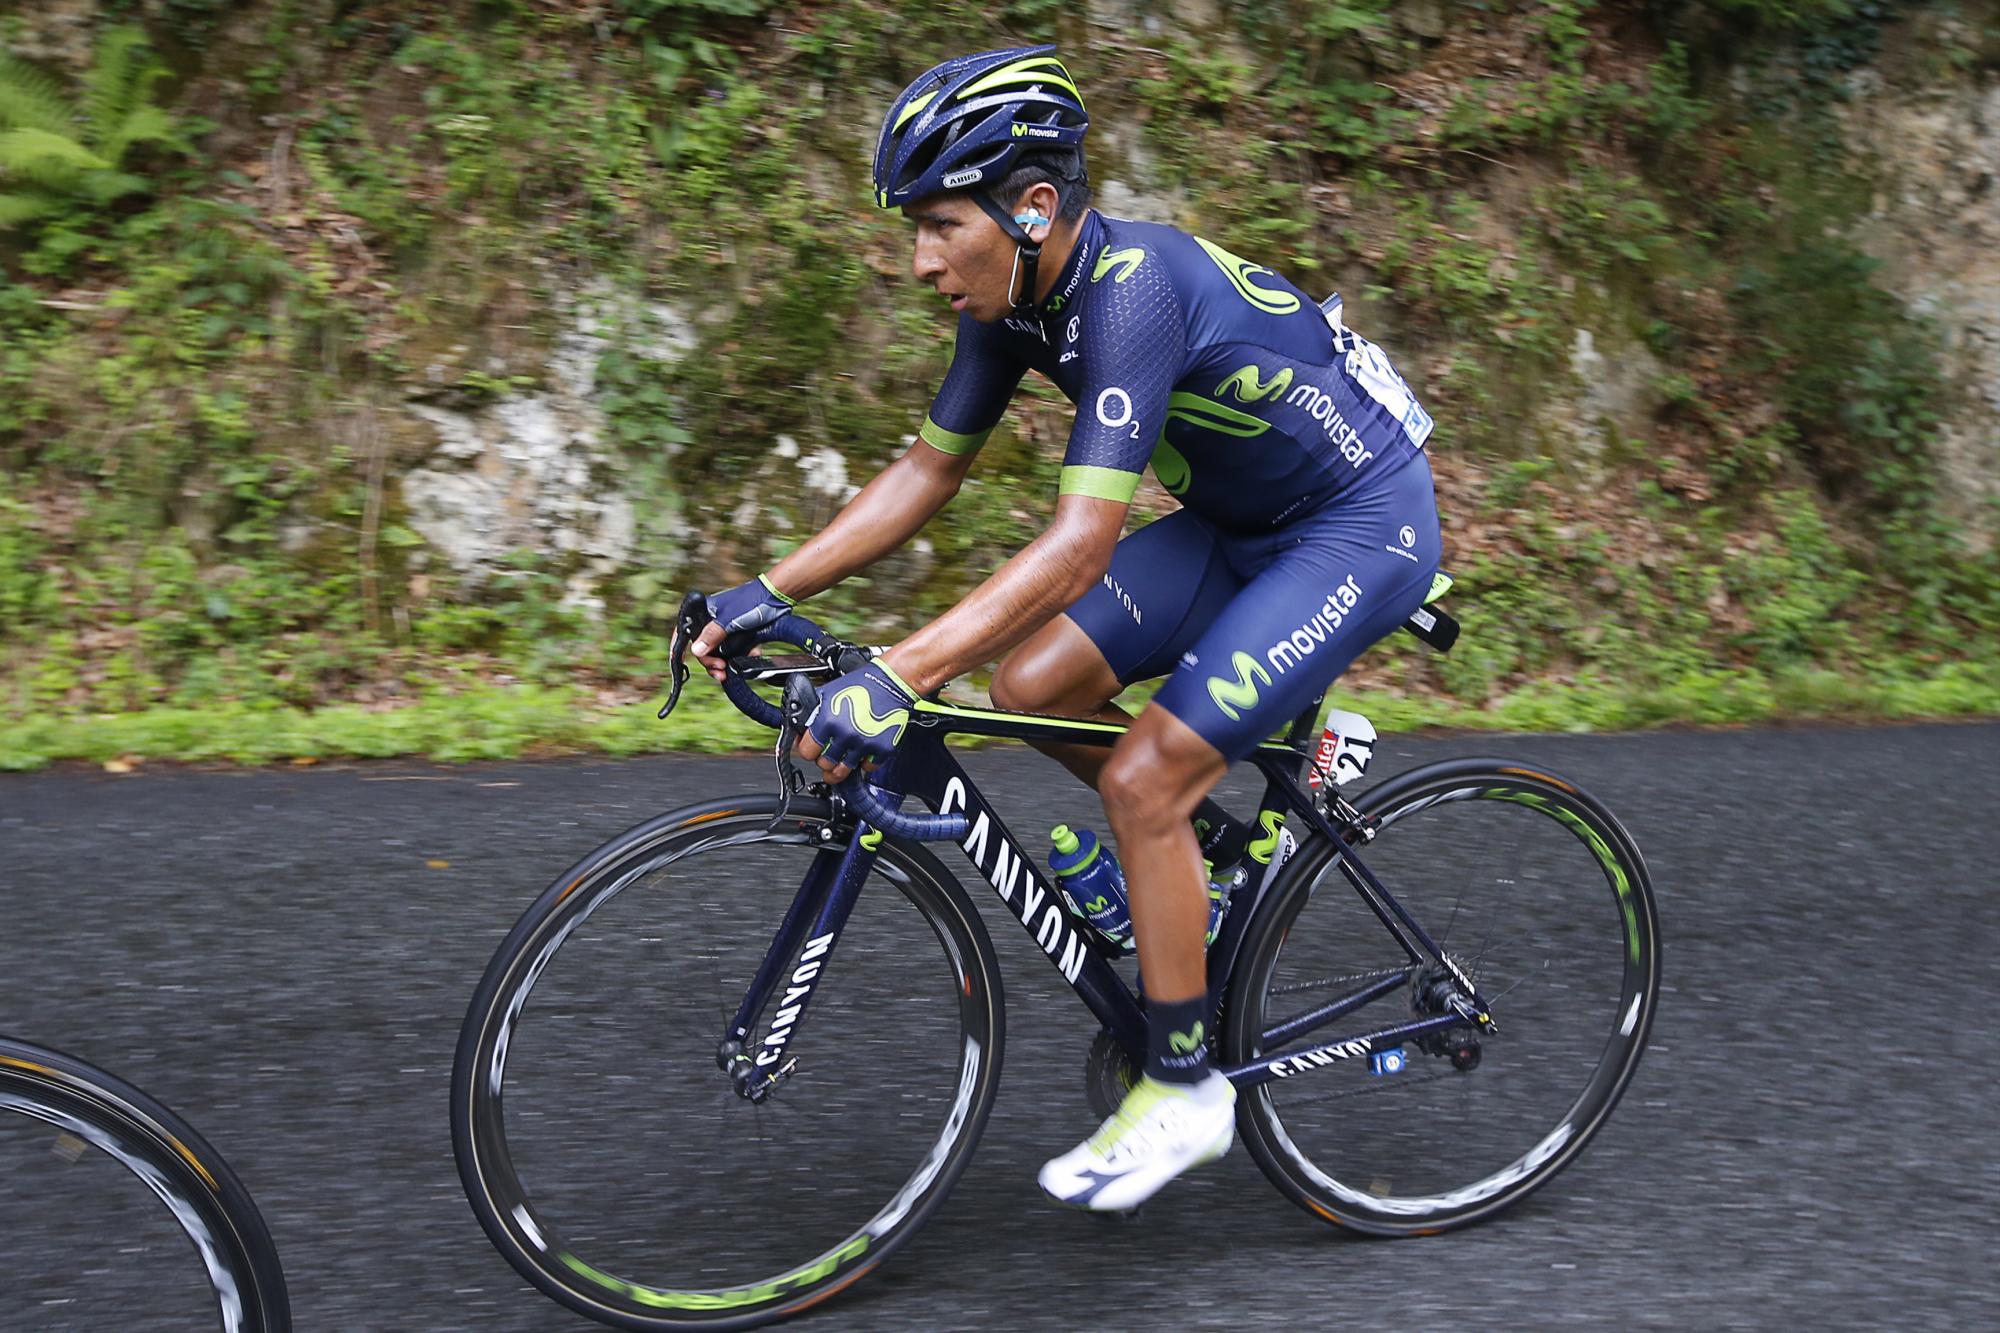 El colombiano Nairo Quintana avanza detrás de los líderes de la etapa (no visibles en la imagen) en la etapa 12 del Tour de Francia, que tuvo un recorrido de 214.5 kilómetros entre Pau y Peyragudes (Francia), el 13 de julio de 2017.